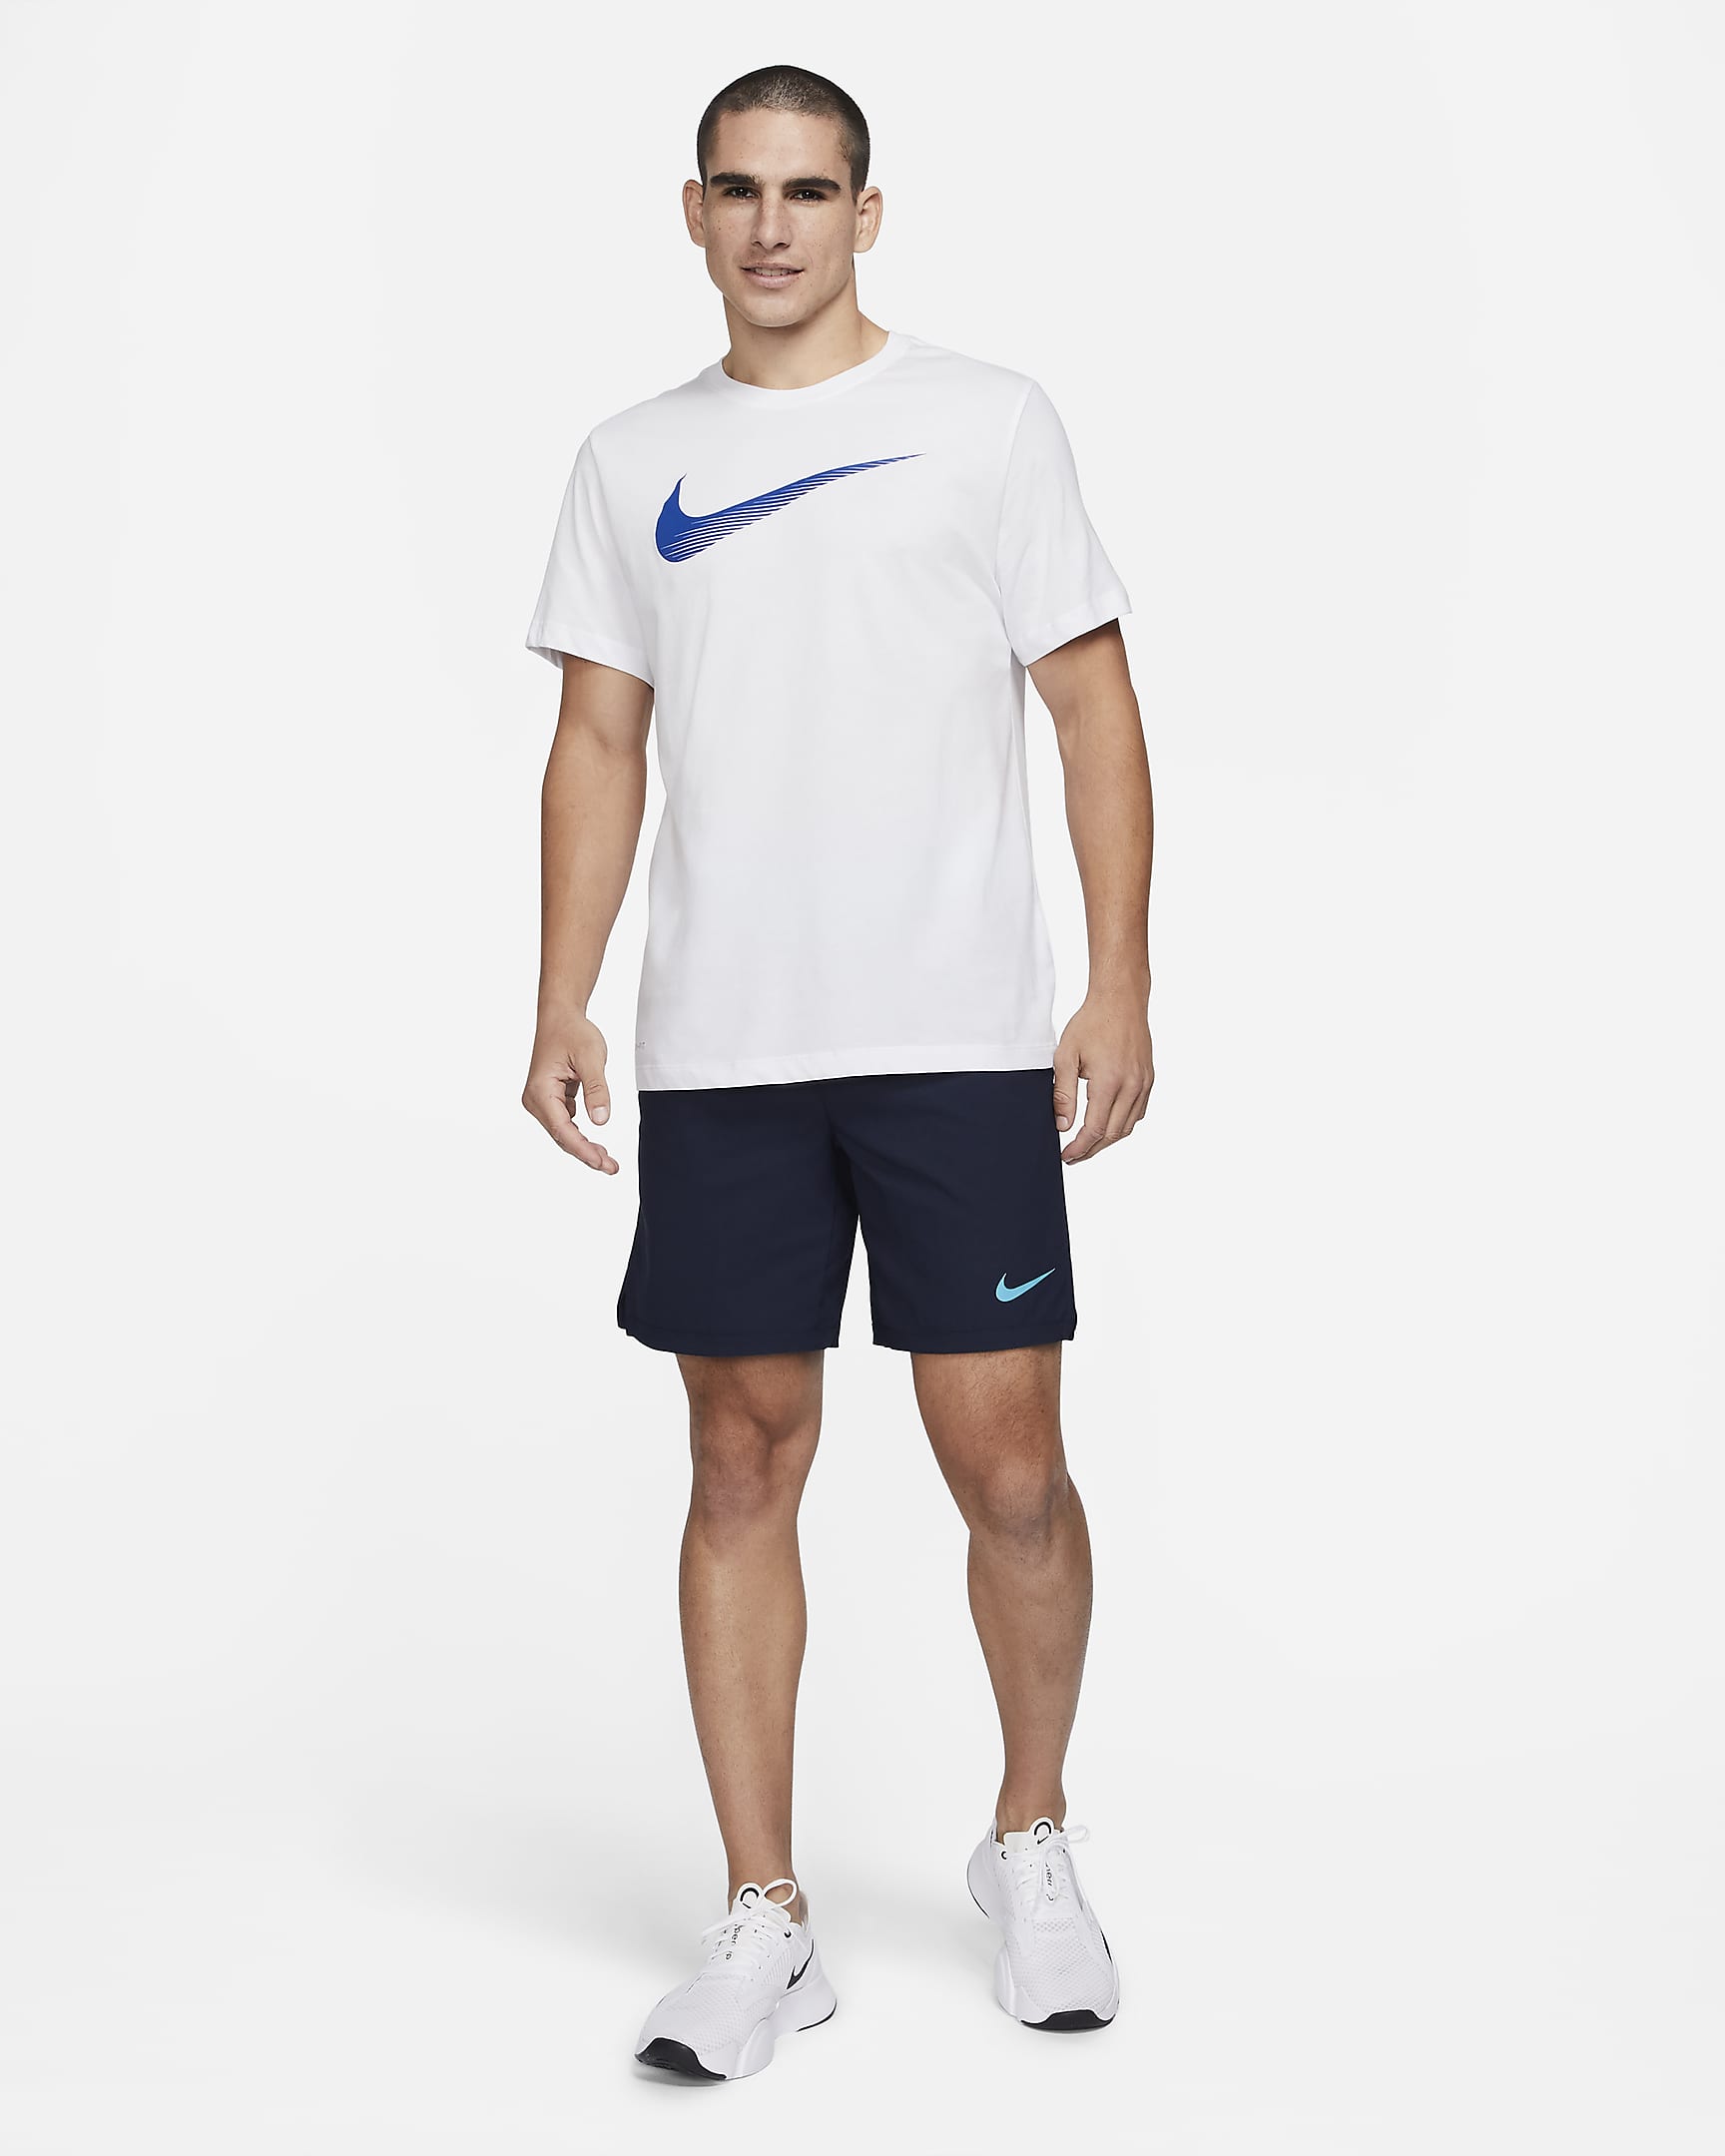 Nike Dri-FIT Men’s Swoosh Training T-Shirt. Nike.com